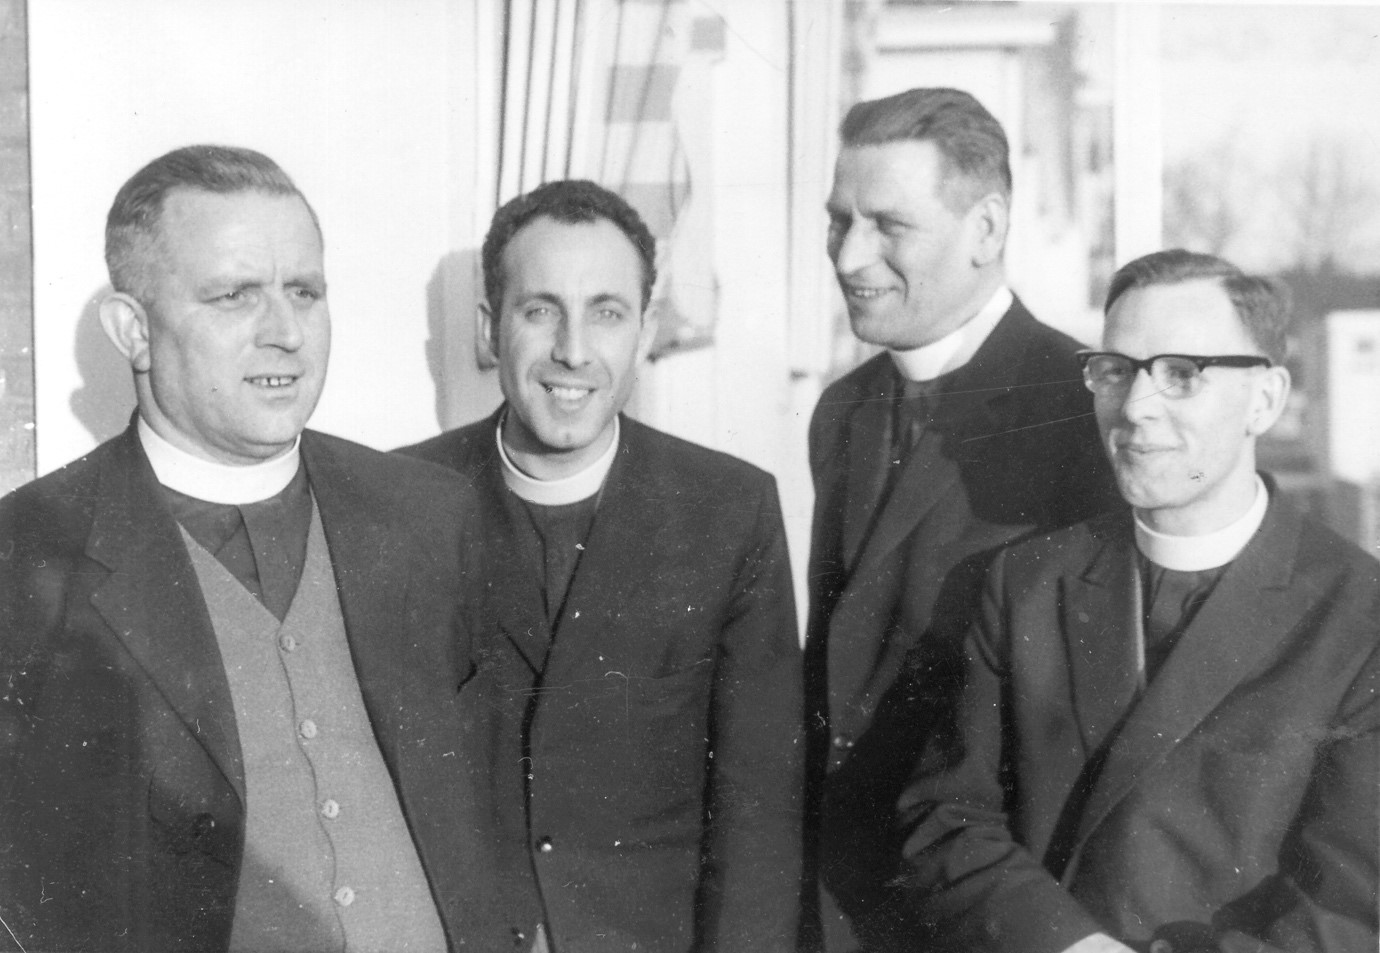 Broeders van internaat Dr. Edward Poppe, bij hun vertek naar de missie in Afrika in 1964. V.l.n.r. broeders Fulcranus, Stefanus, Megandius, Efrem. (Foto ingezonden door Huub Sanders)